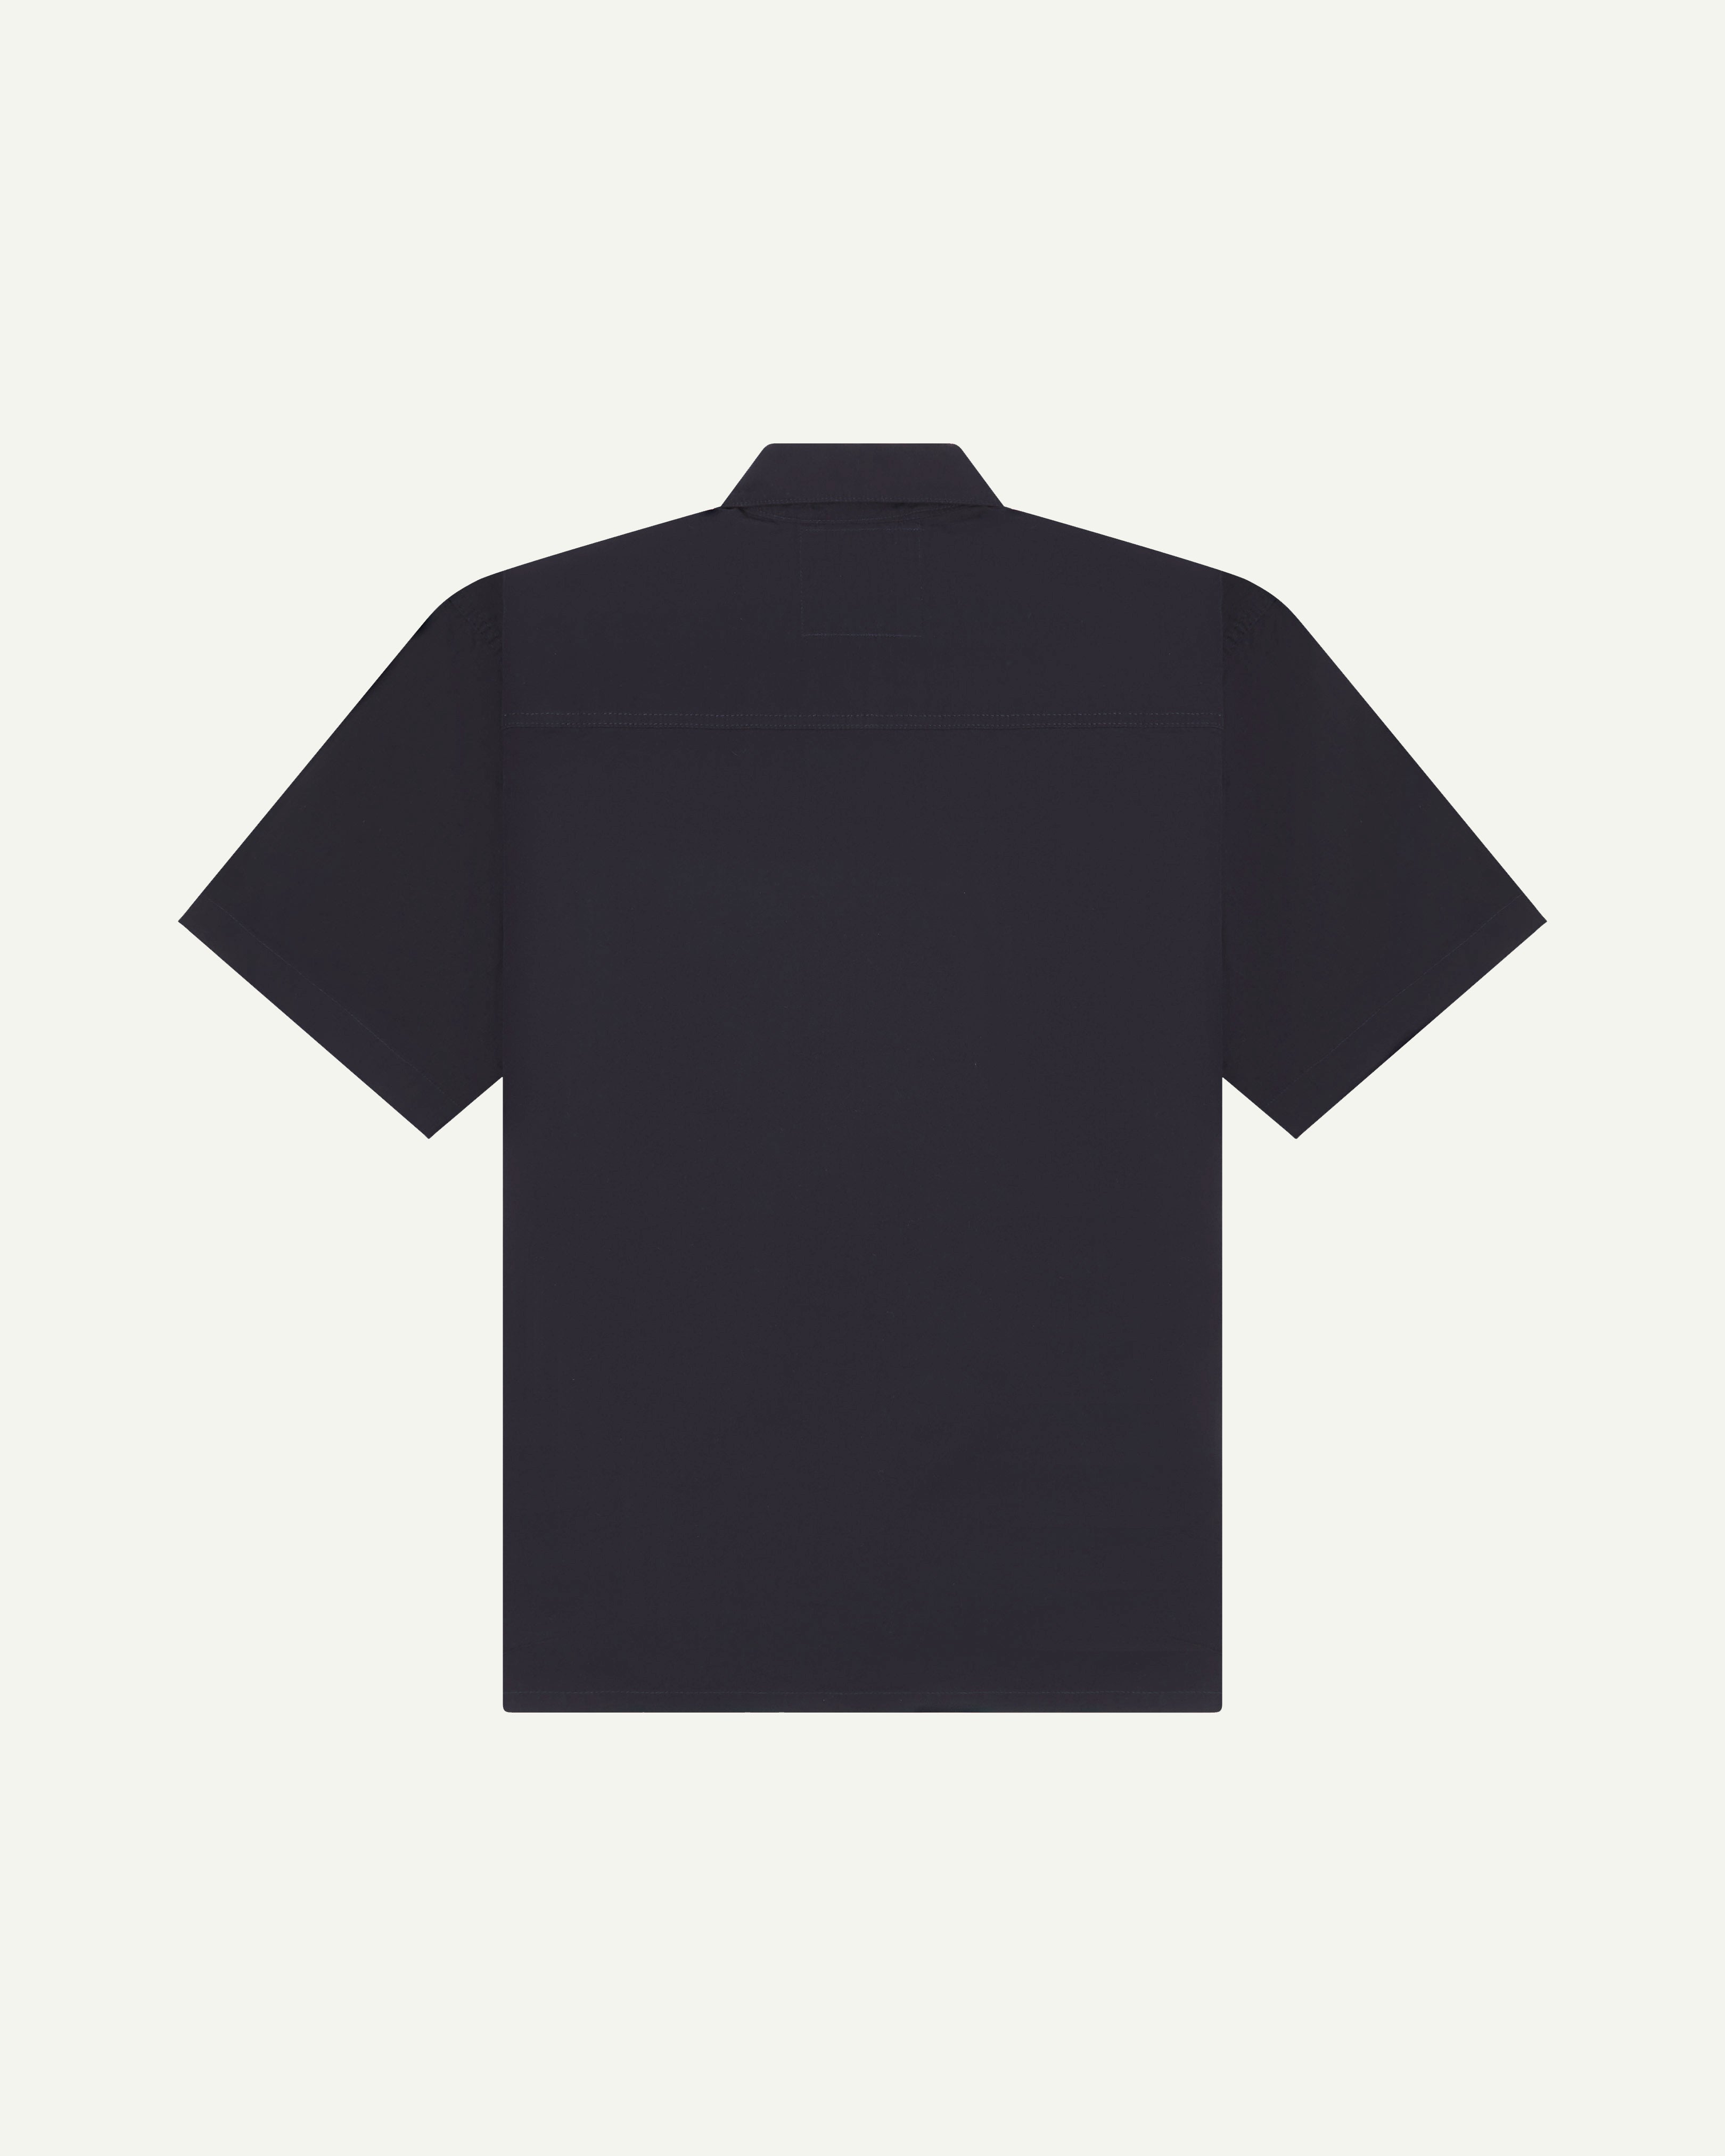 #6003 lightweight short sleeve shirt - midnight blue